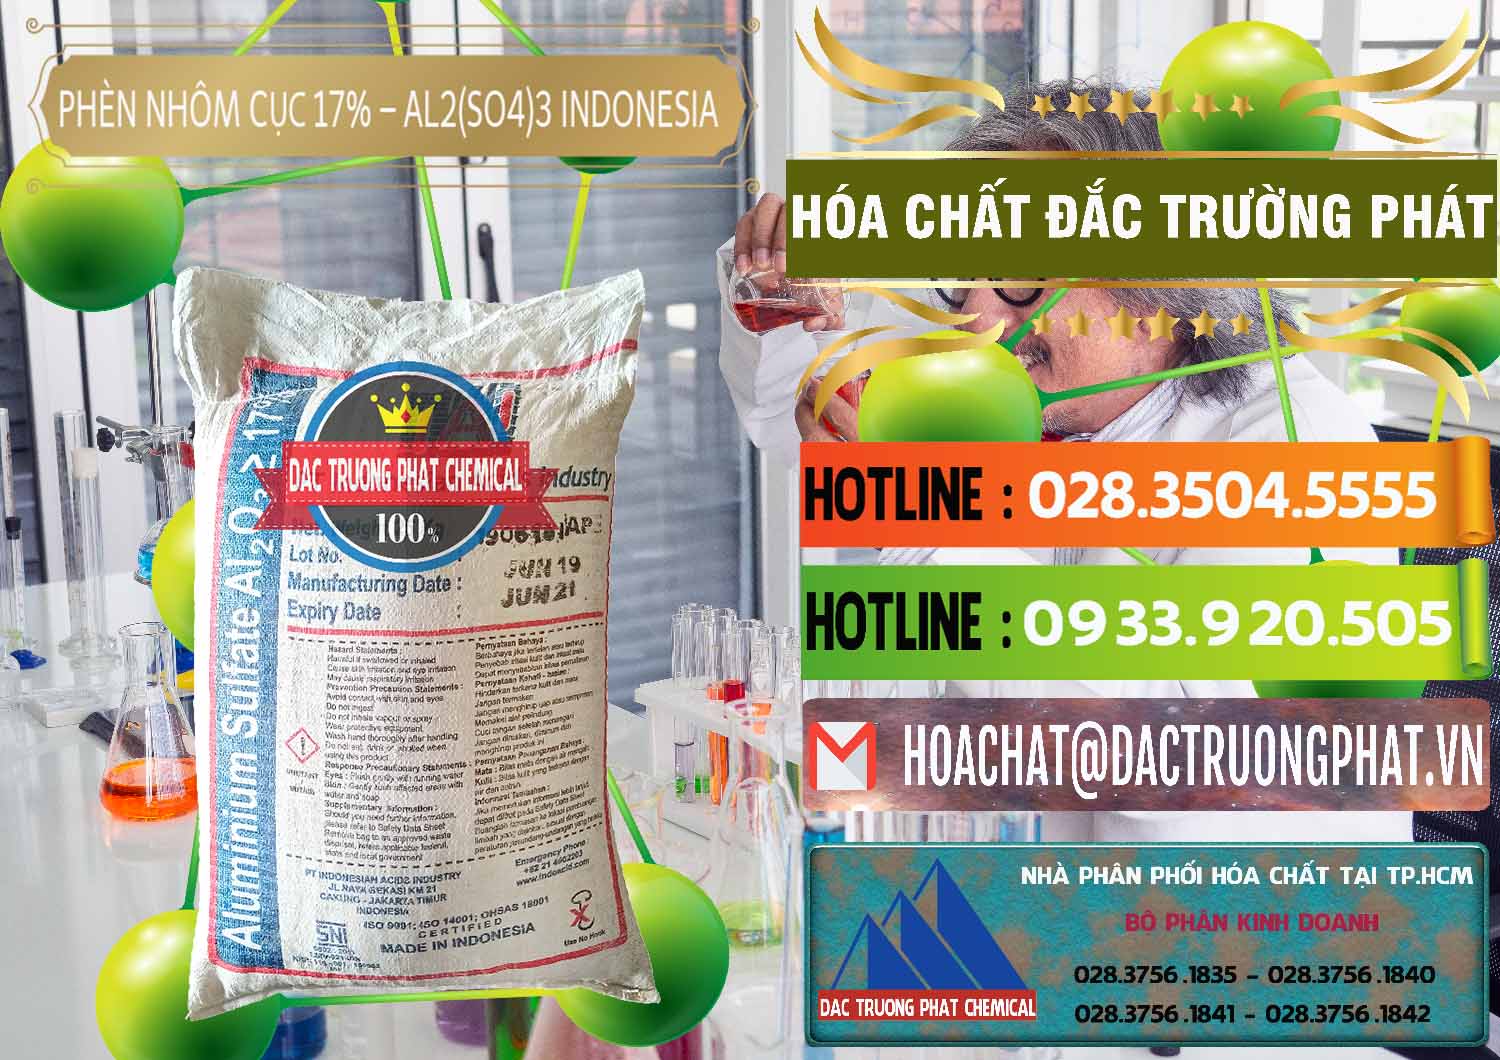 Nơi chuyên bán và cung cấp Phèn Nhôm Cục - Al2(SO4)3 17% bao 25kg Indonesia - 0115 - Cty phân phối và cung cấp hóa chất tại TP.HCM - cungcaphoachat.com.vn